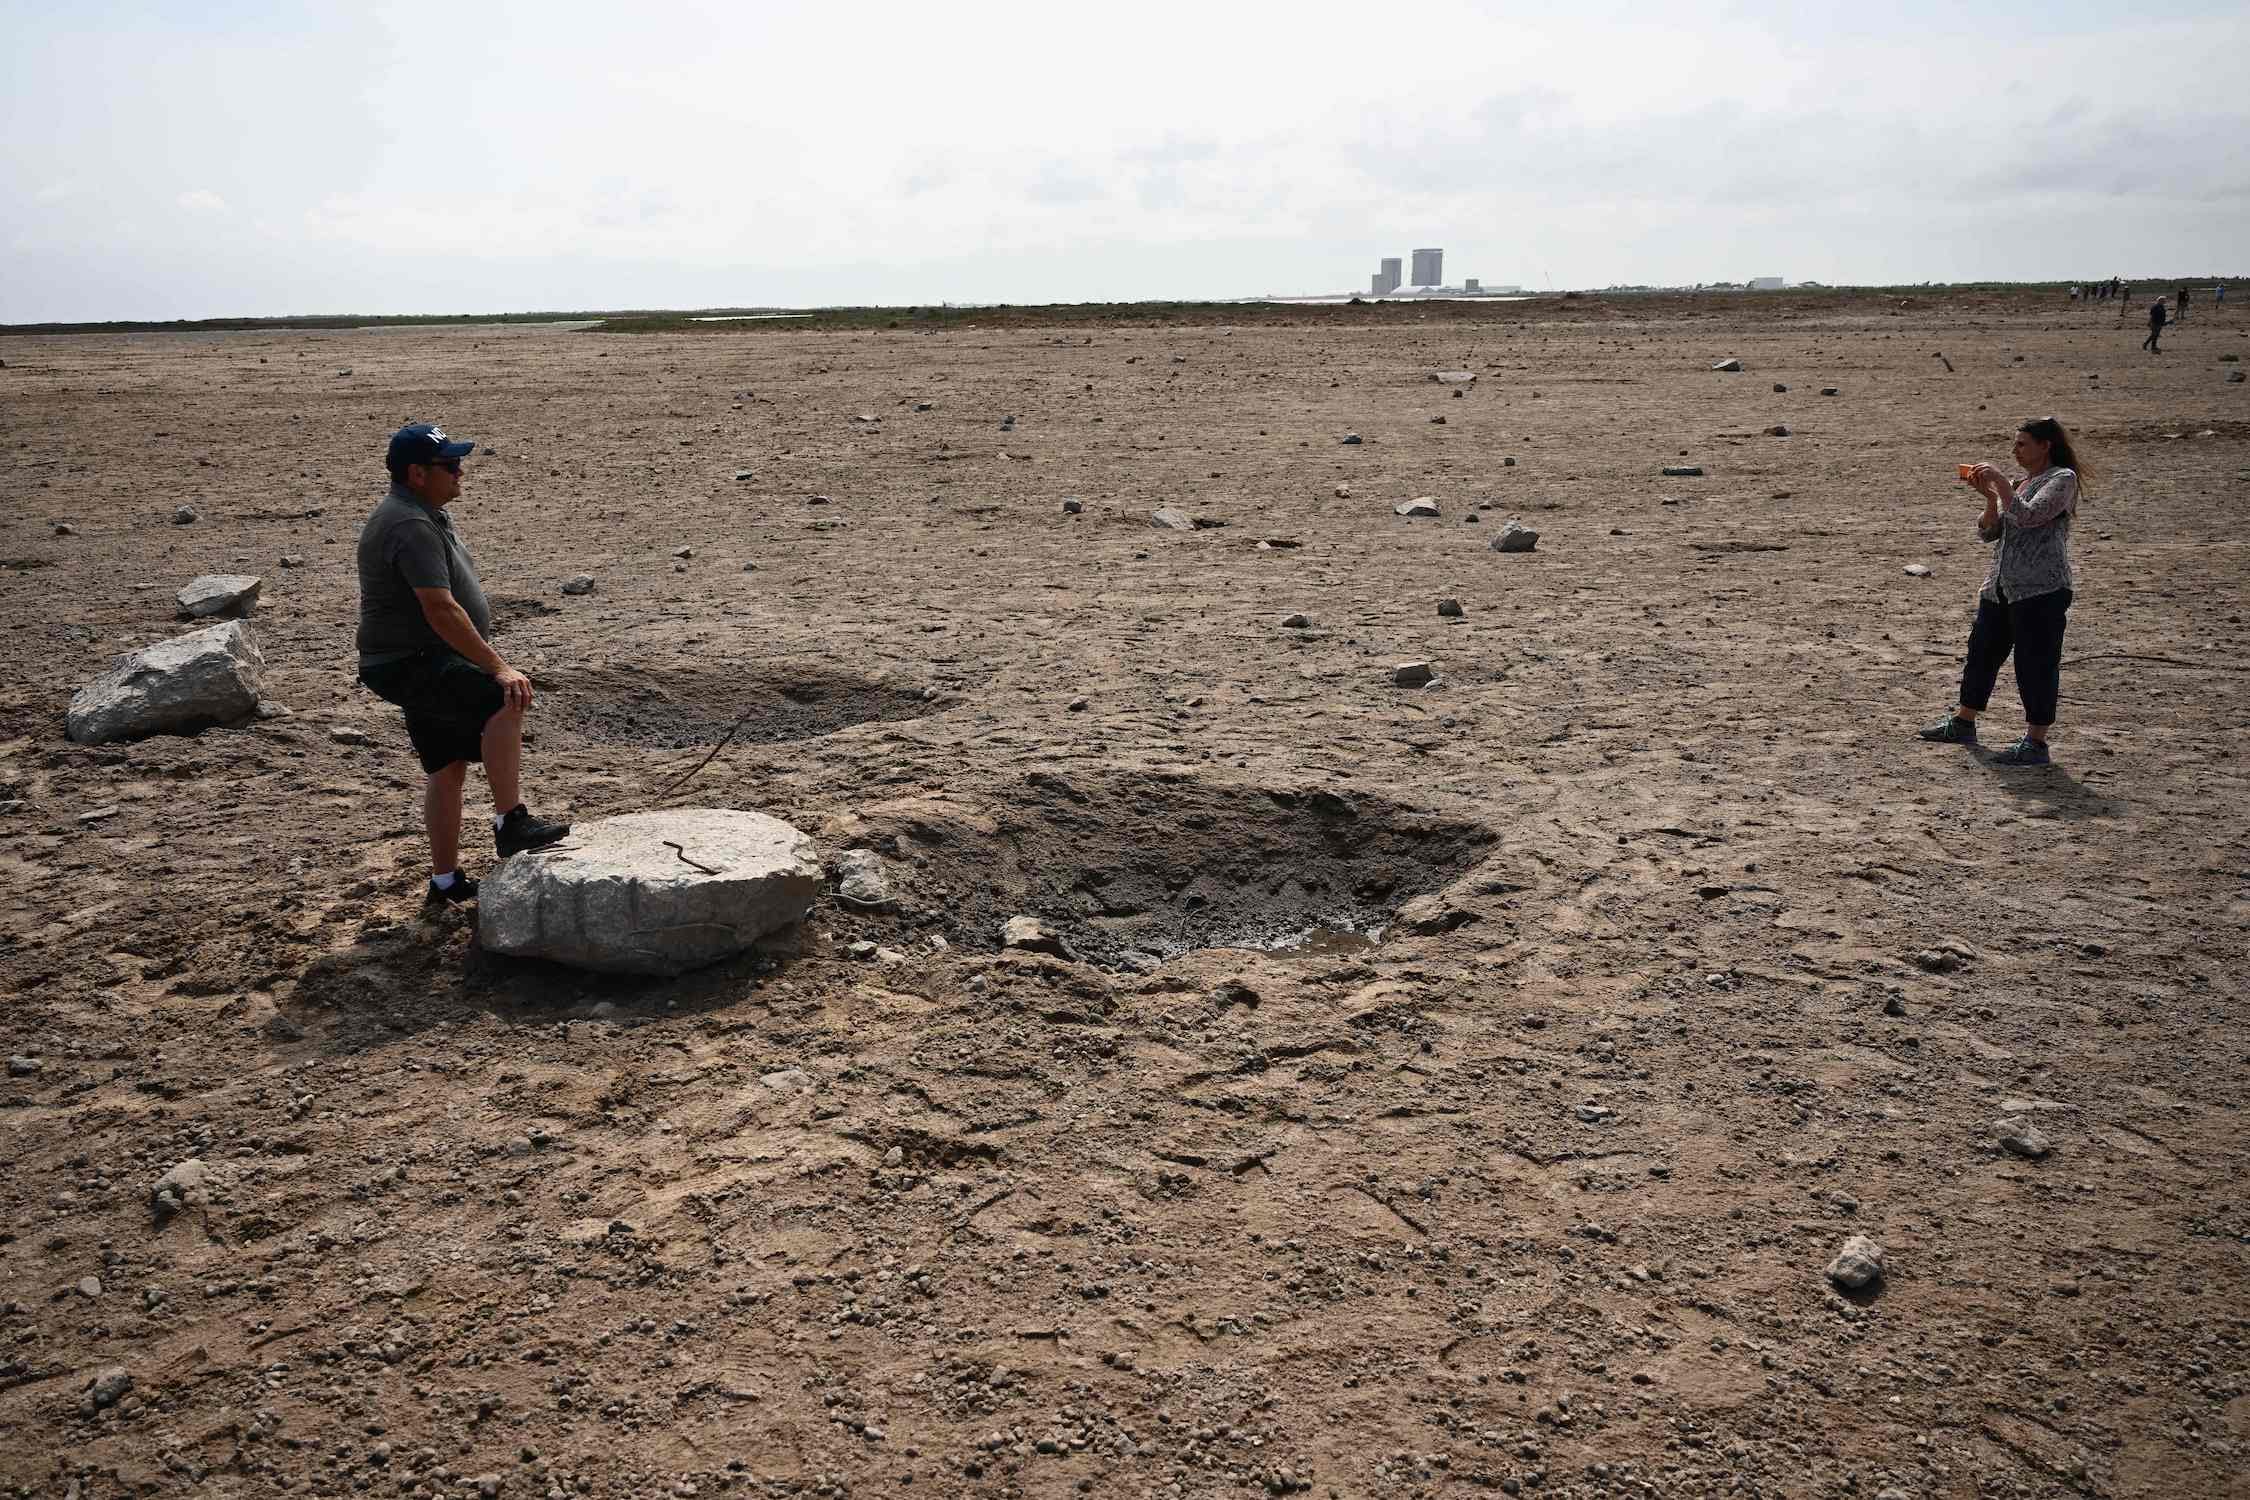 Eine Frau fotografiert einen Mann, der mit einem Fuß auf einem großen Betonbrocken neben einem Krater in einem trockenen Erdfeld steht